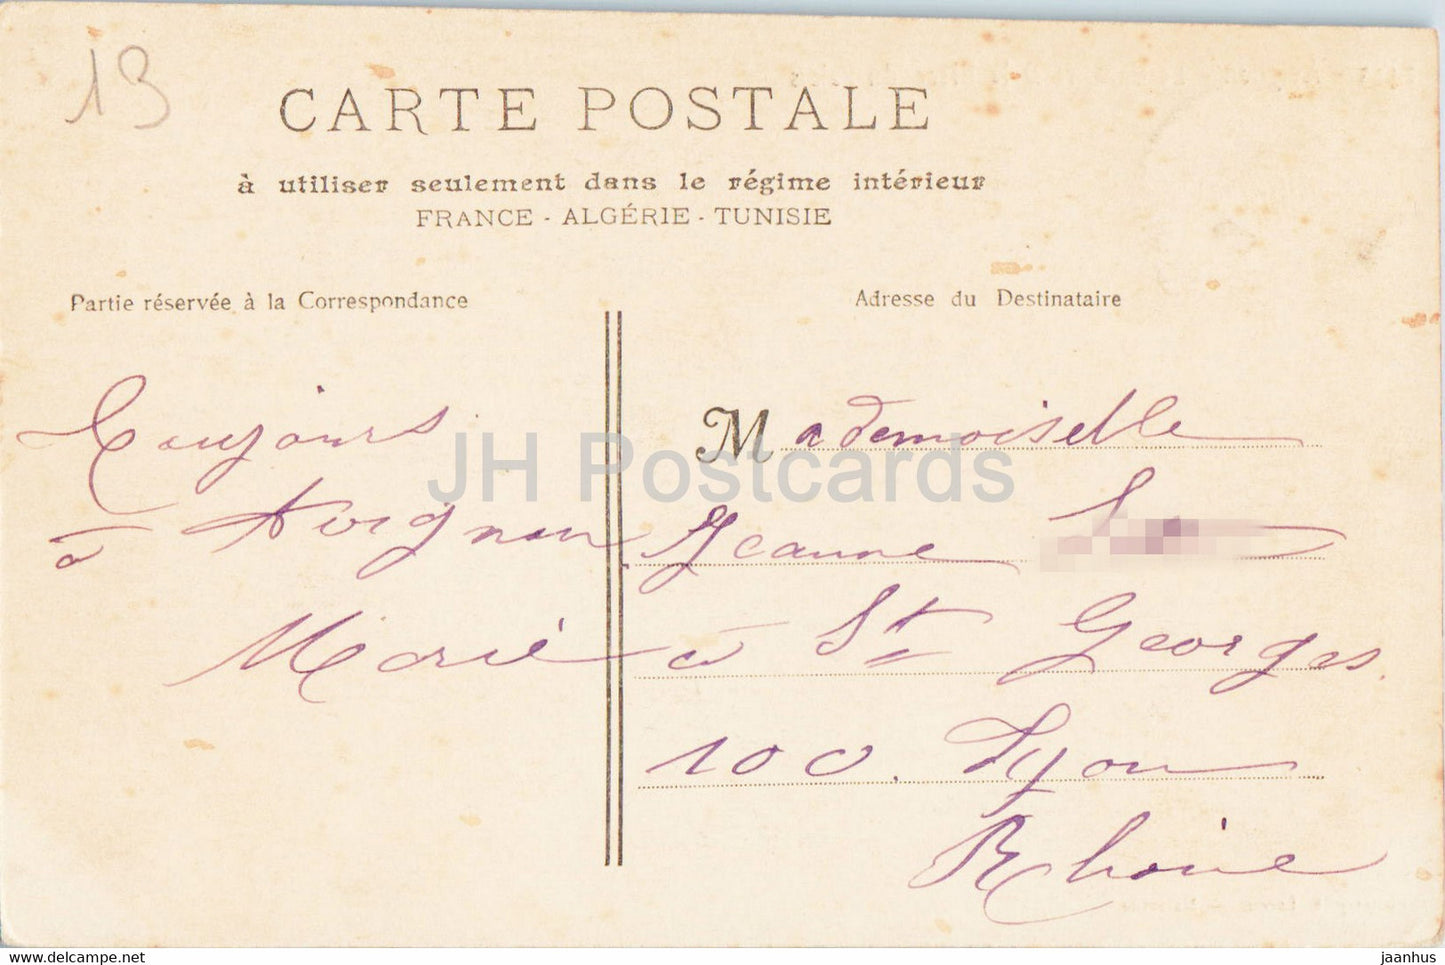 Avignon - Le Calvaire et la Place du Palais - old postcard - 1905 - France - used